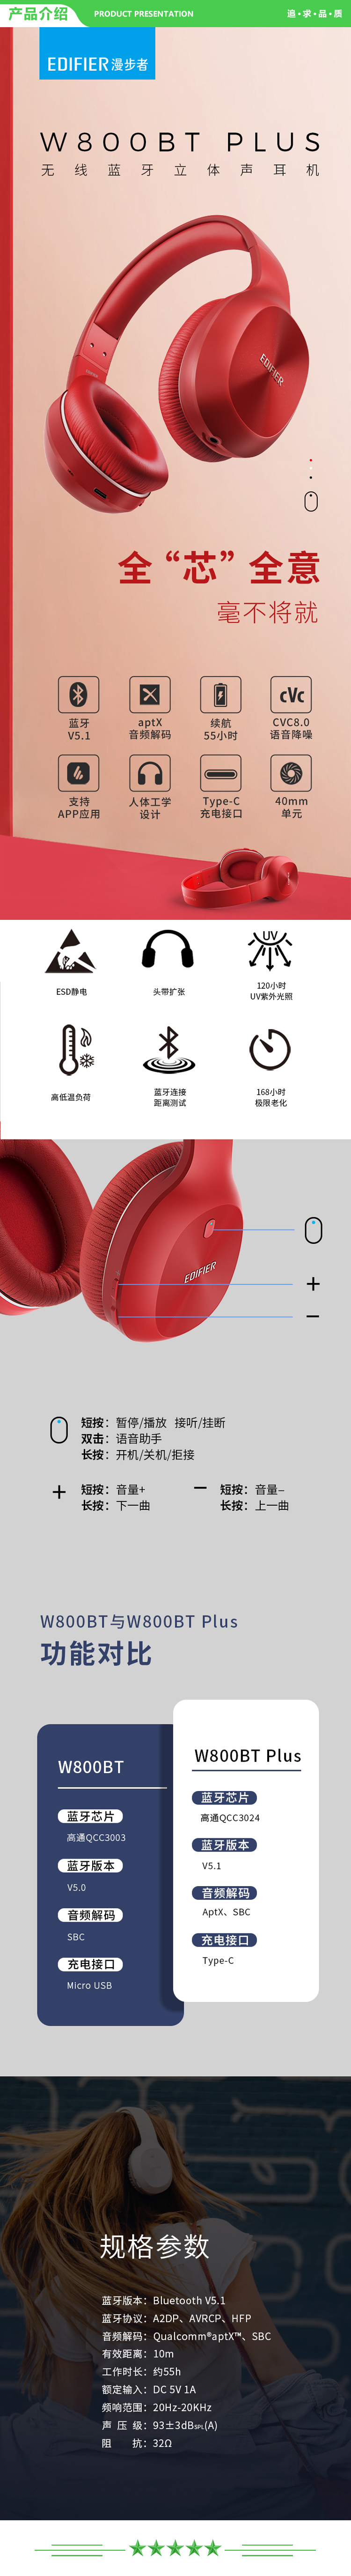 漫步者 EDIFIER W800BT Plus头戴式立体声蓝牙耳机 音乐耳机 手机耳机 通用苹果华为小米手机 黑色 .jpg